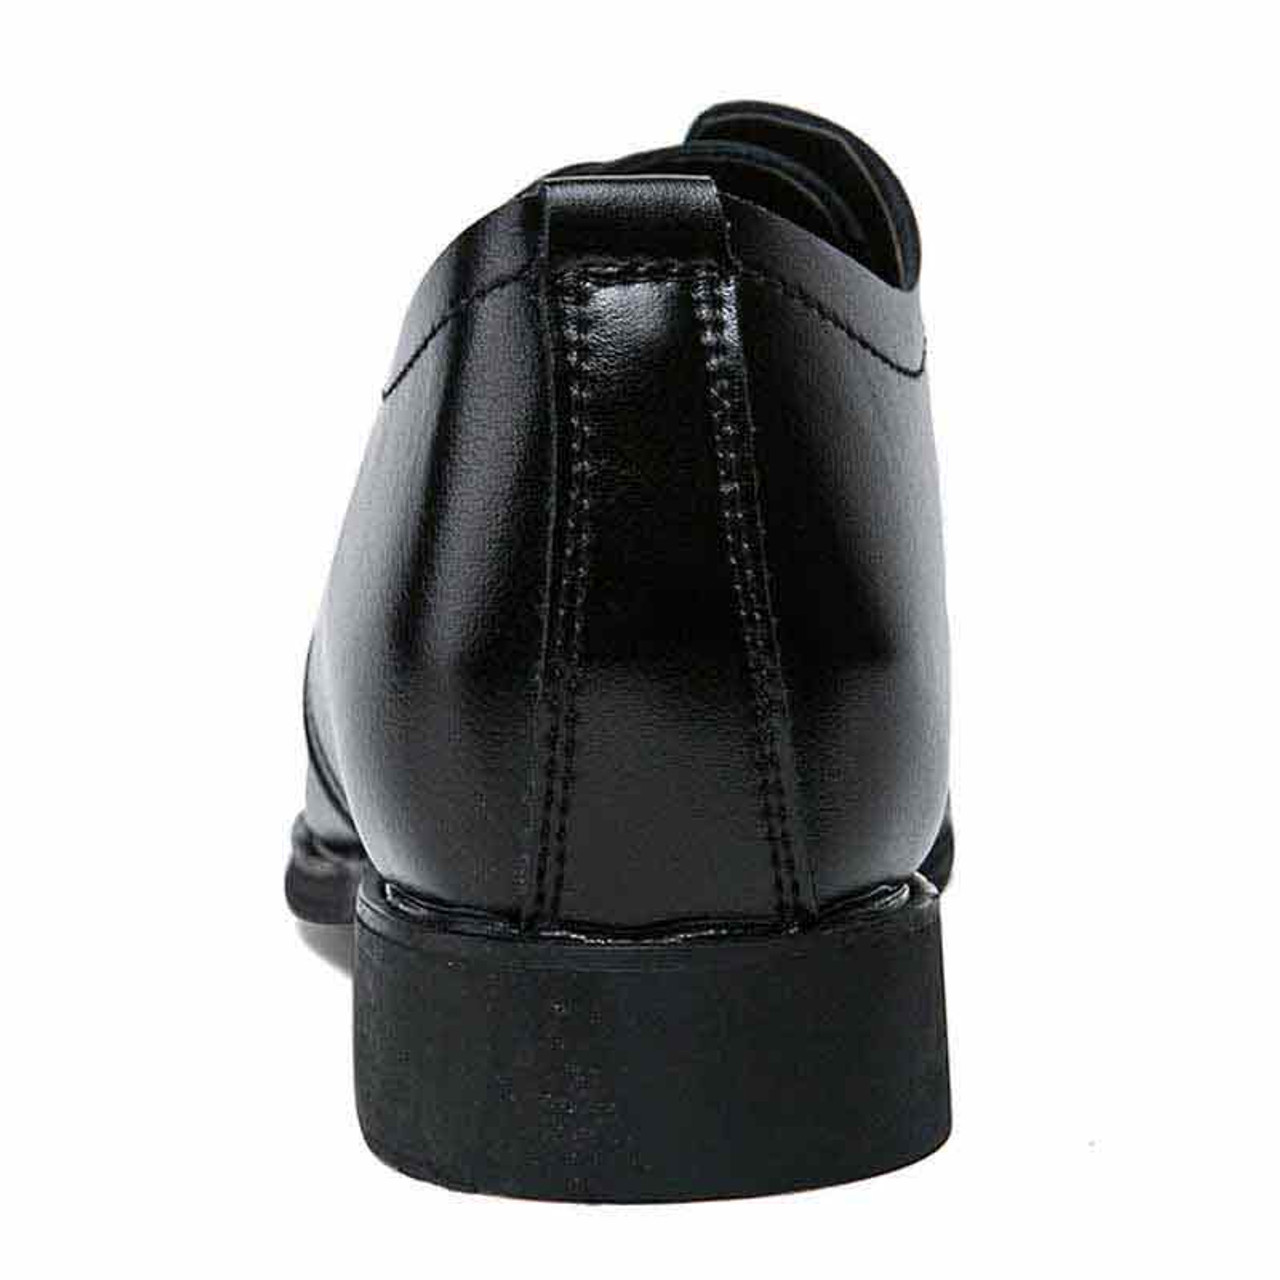 Black simple plain leather derby dress shoe | Mens dress shoes online ...